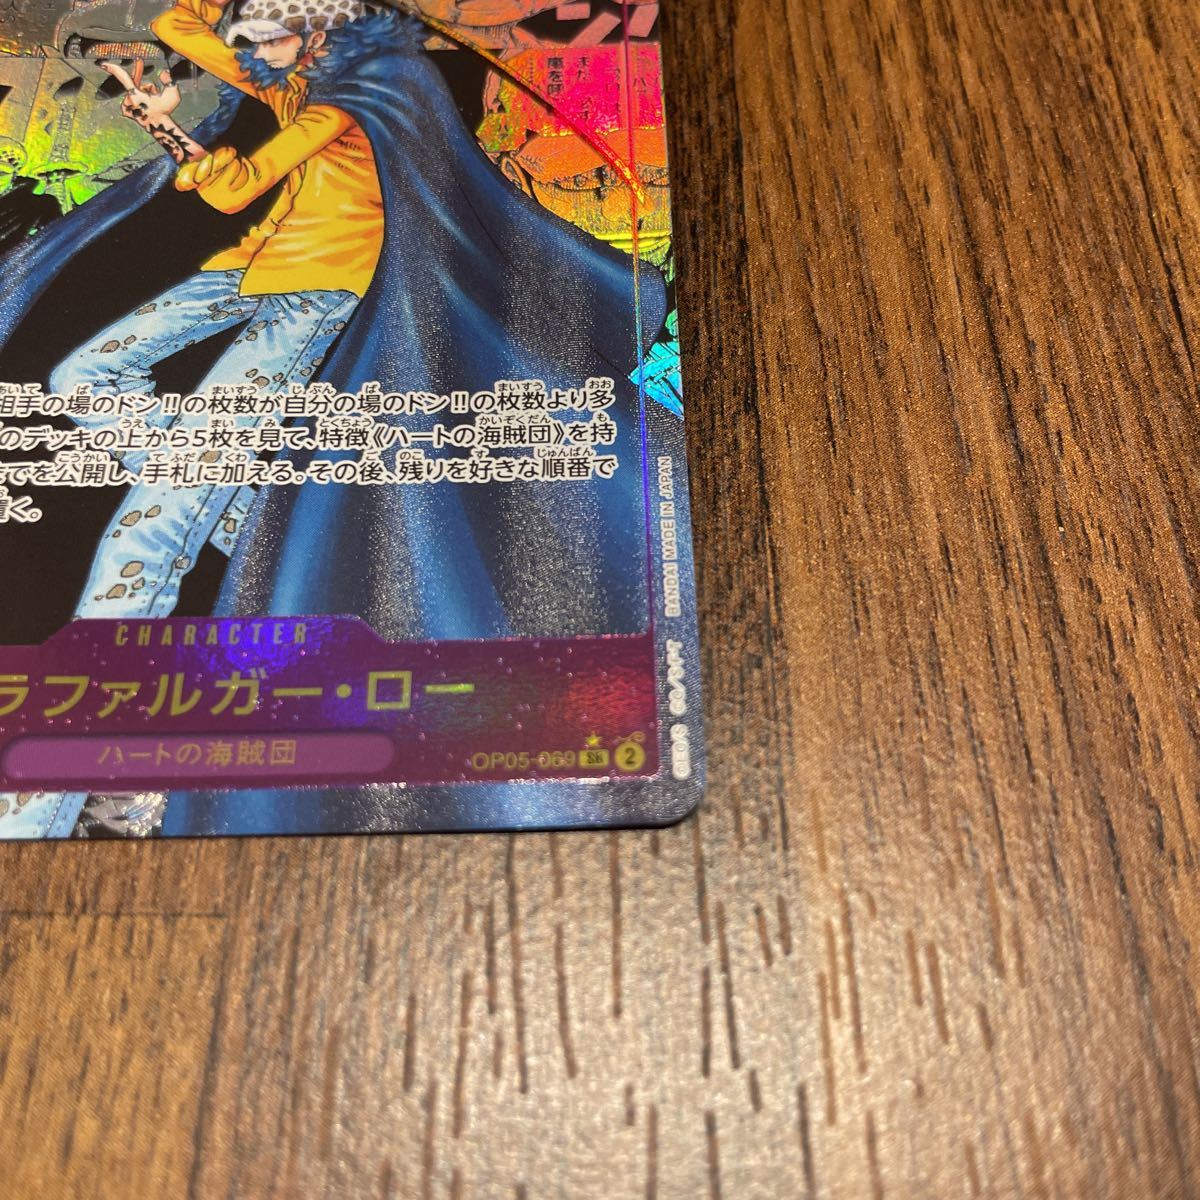 衝撃特価 【新品】ワンピースカード ロー コミパラ コミックパラレル